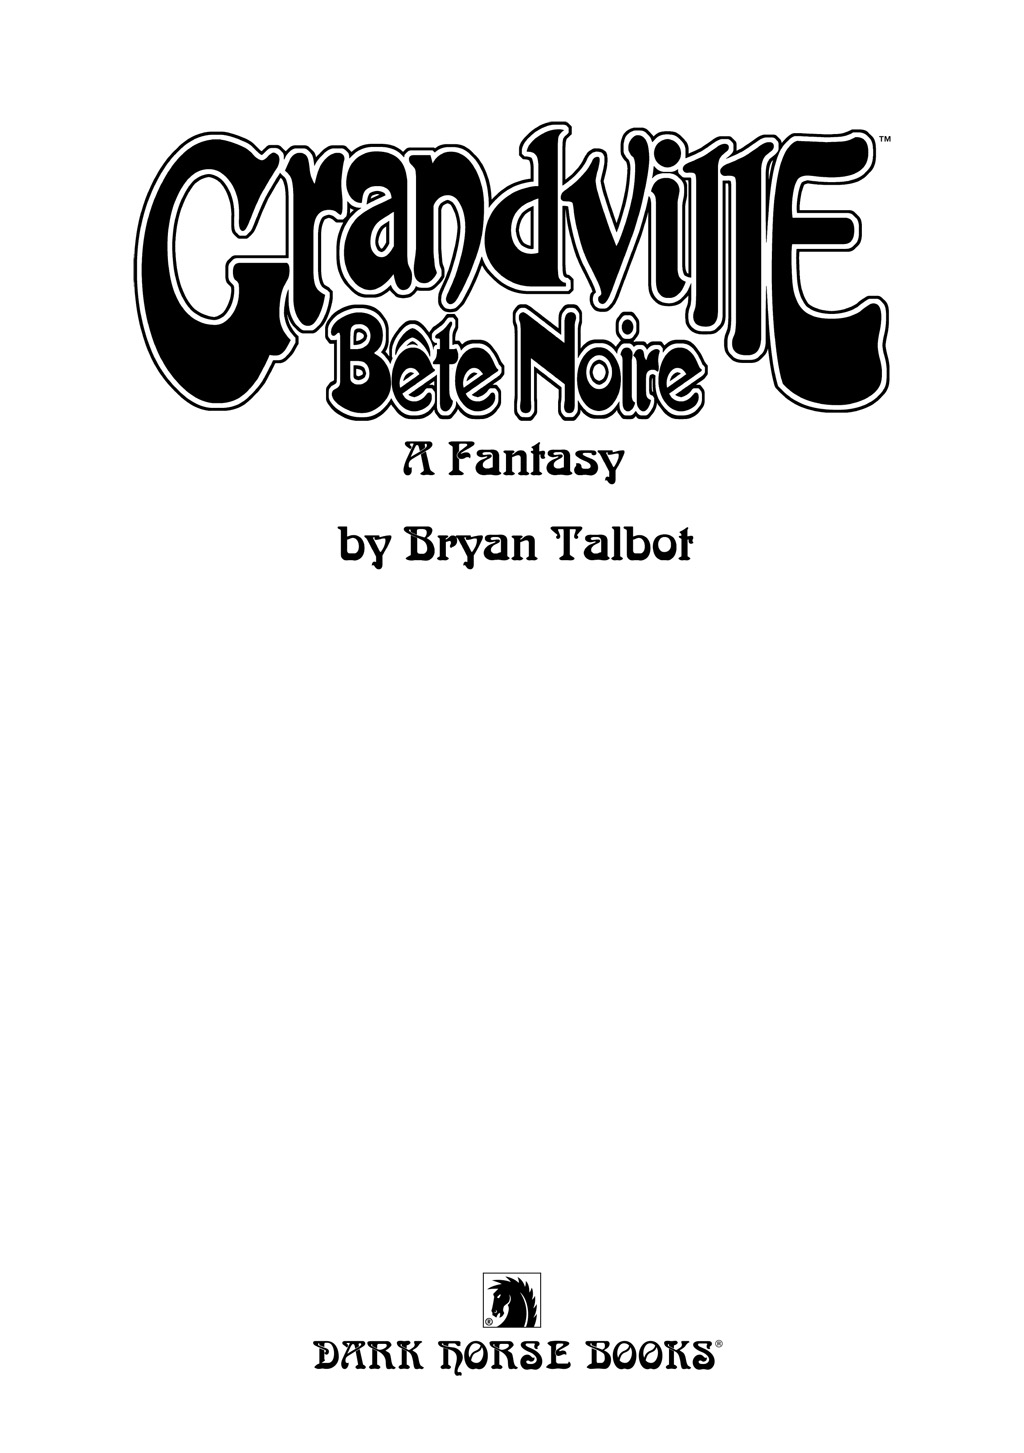 Read online Grandville comic -  Issue # Vol. 3 Bete Noire - 2